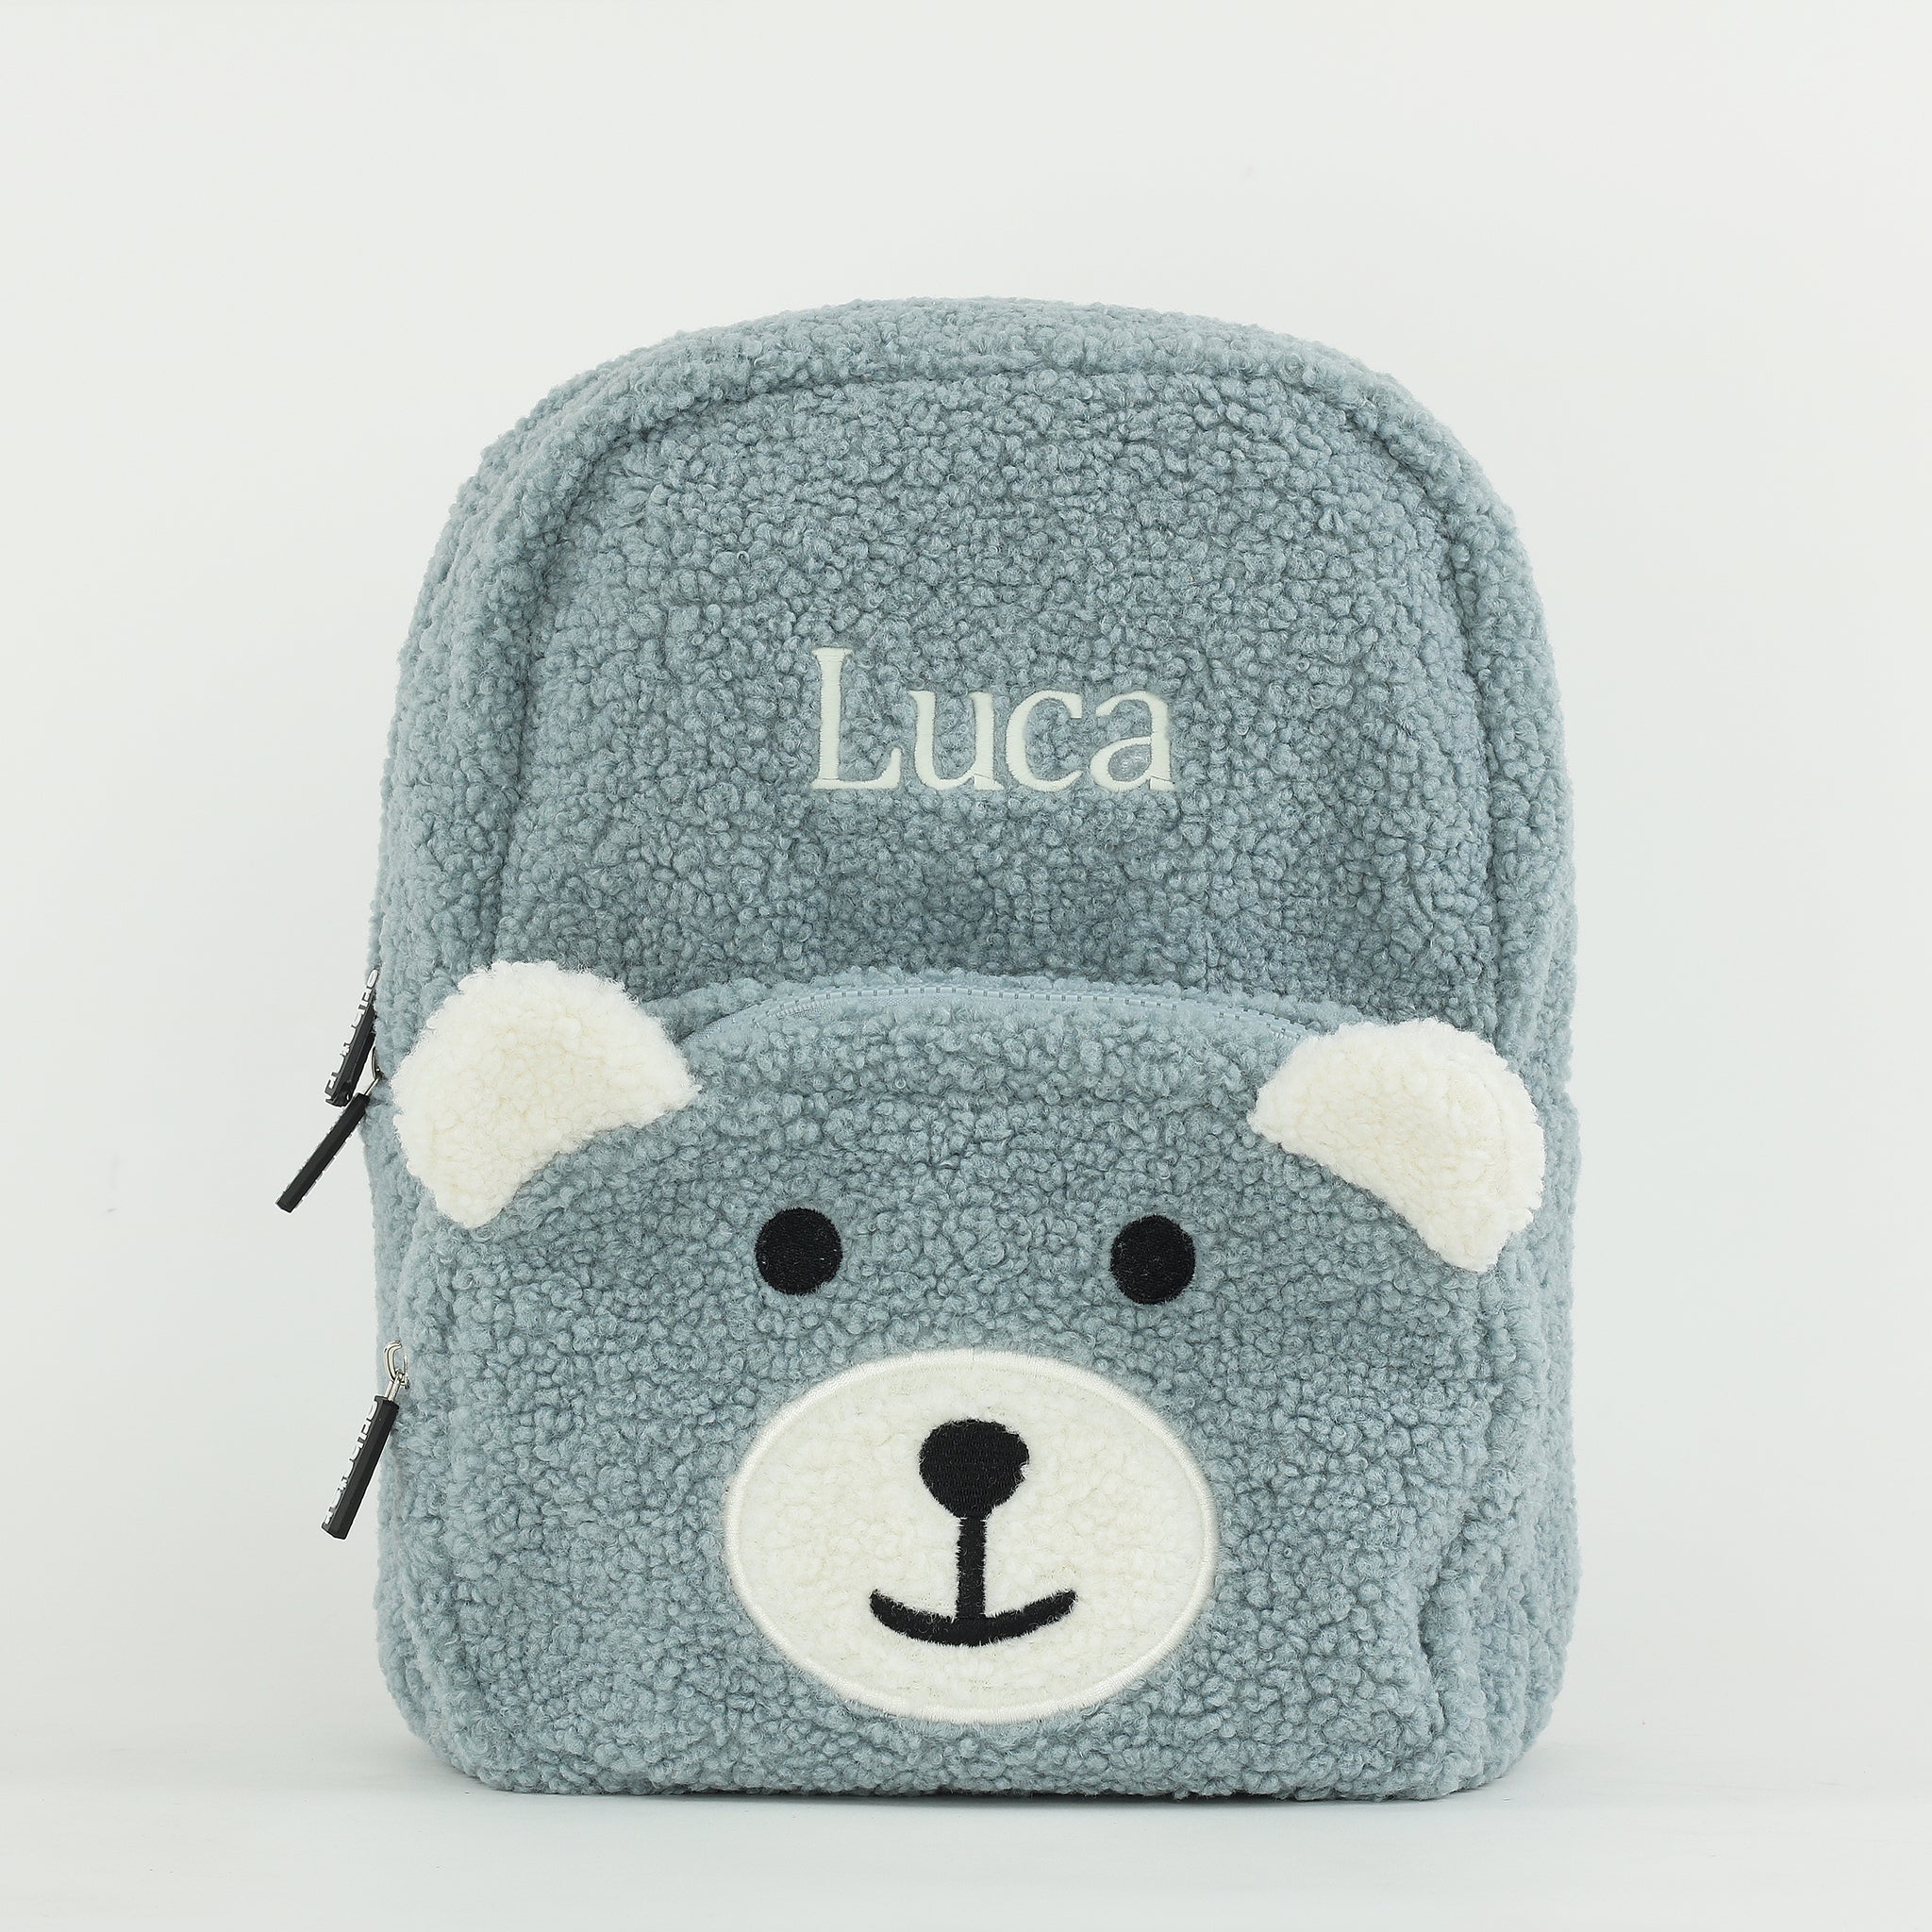 Fluffy Teddy Kids Backpack - Dusty Blue